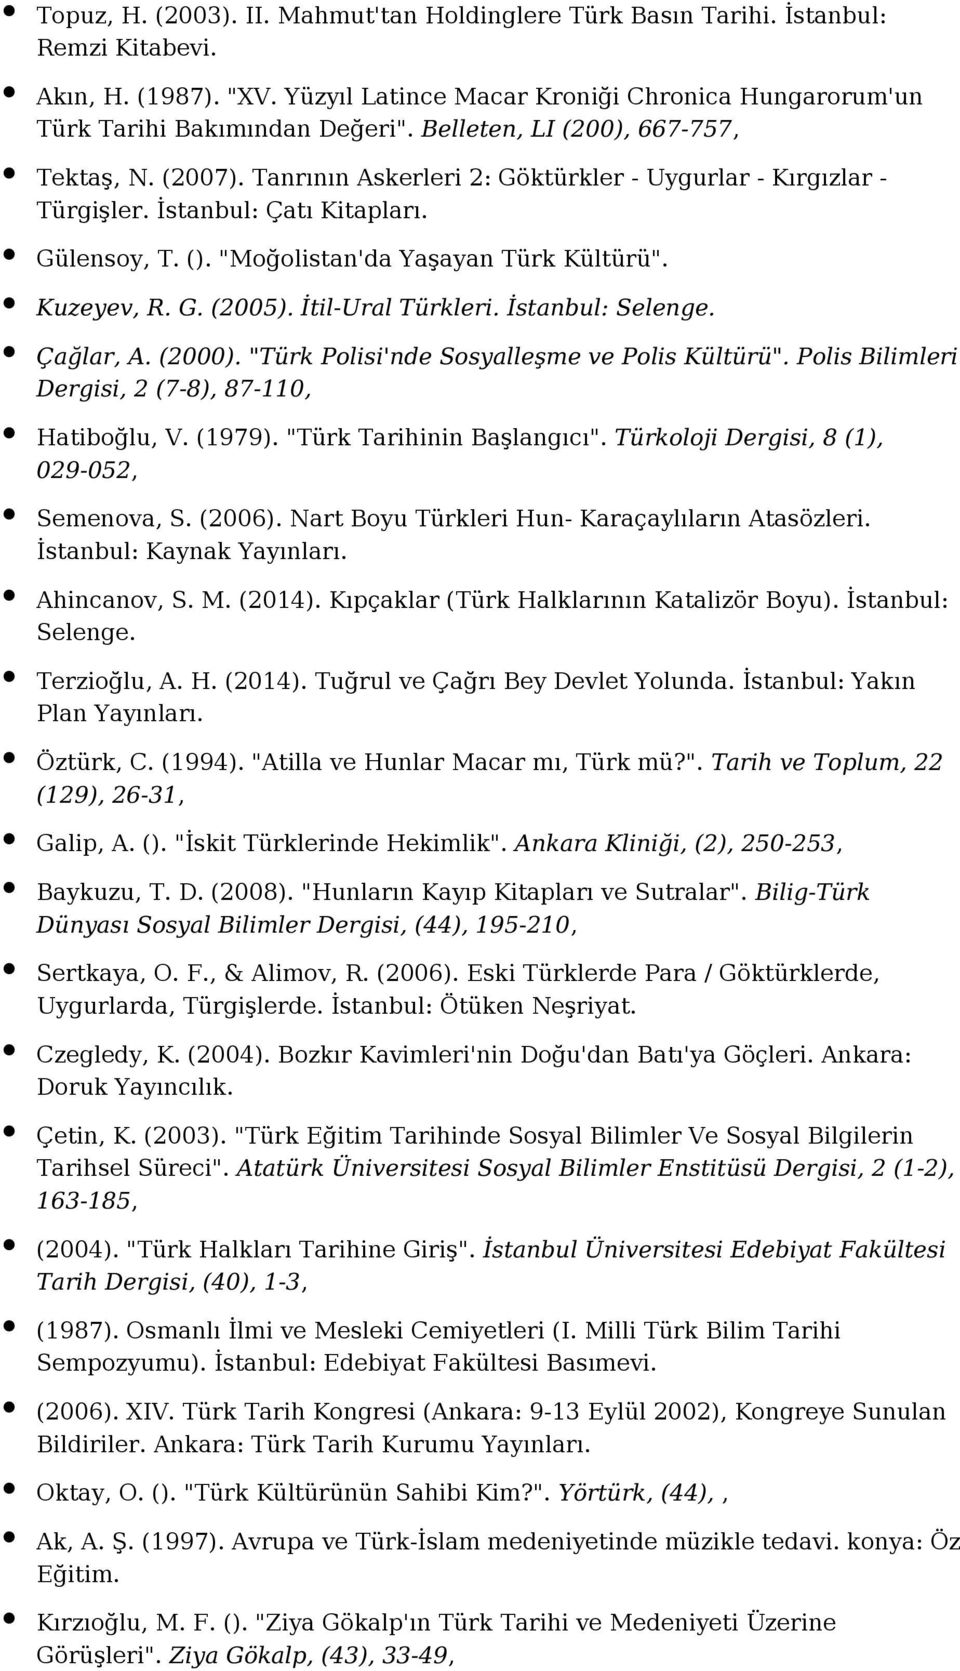 Kuzeyev, R. G. (2005). İtil-Ural Türkleri. İstanbul: Selenge. Çağlar, A. (2000). "Türk Polisi'nde Sosyalleşme ve Polis Kültürü". Polis Bilimleri Dergisi, 2 (7-8), 87-110, Hatiboğlu, V. (1979).